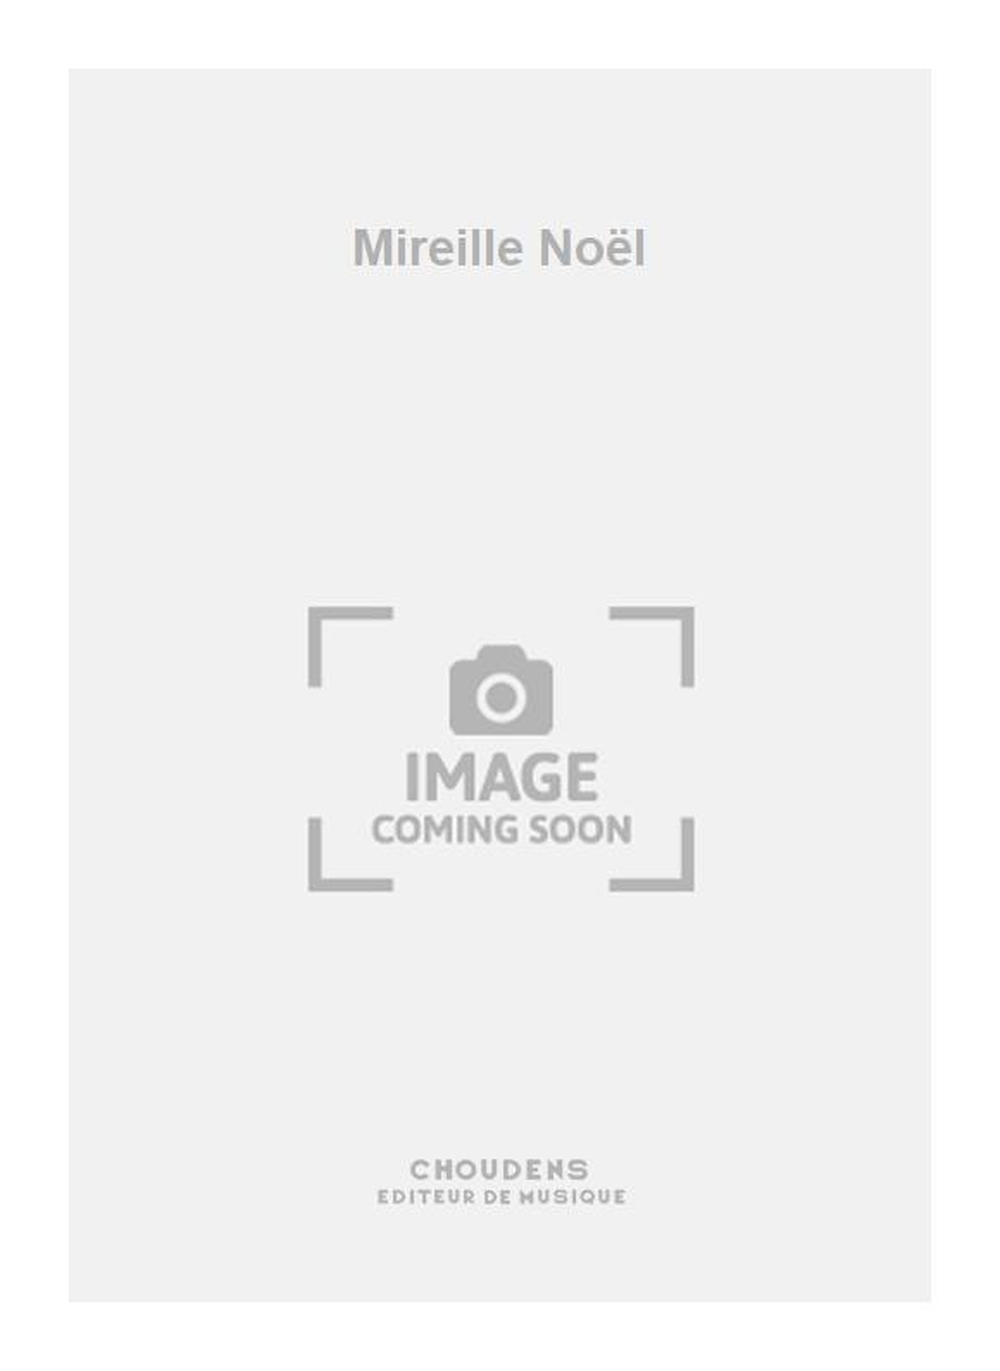 Mireille Nol